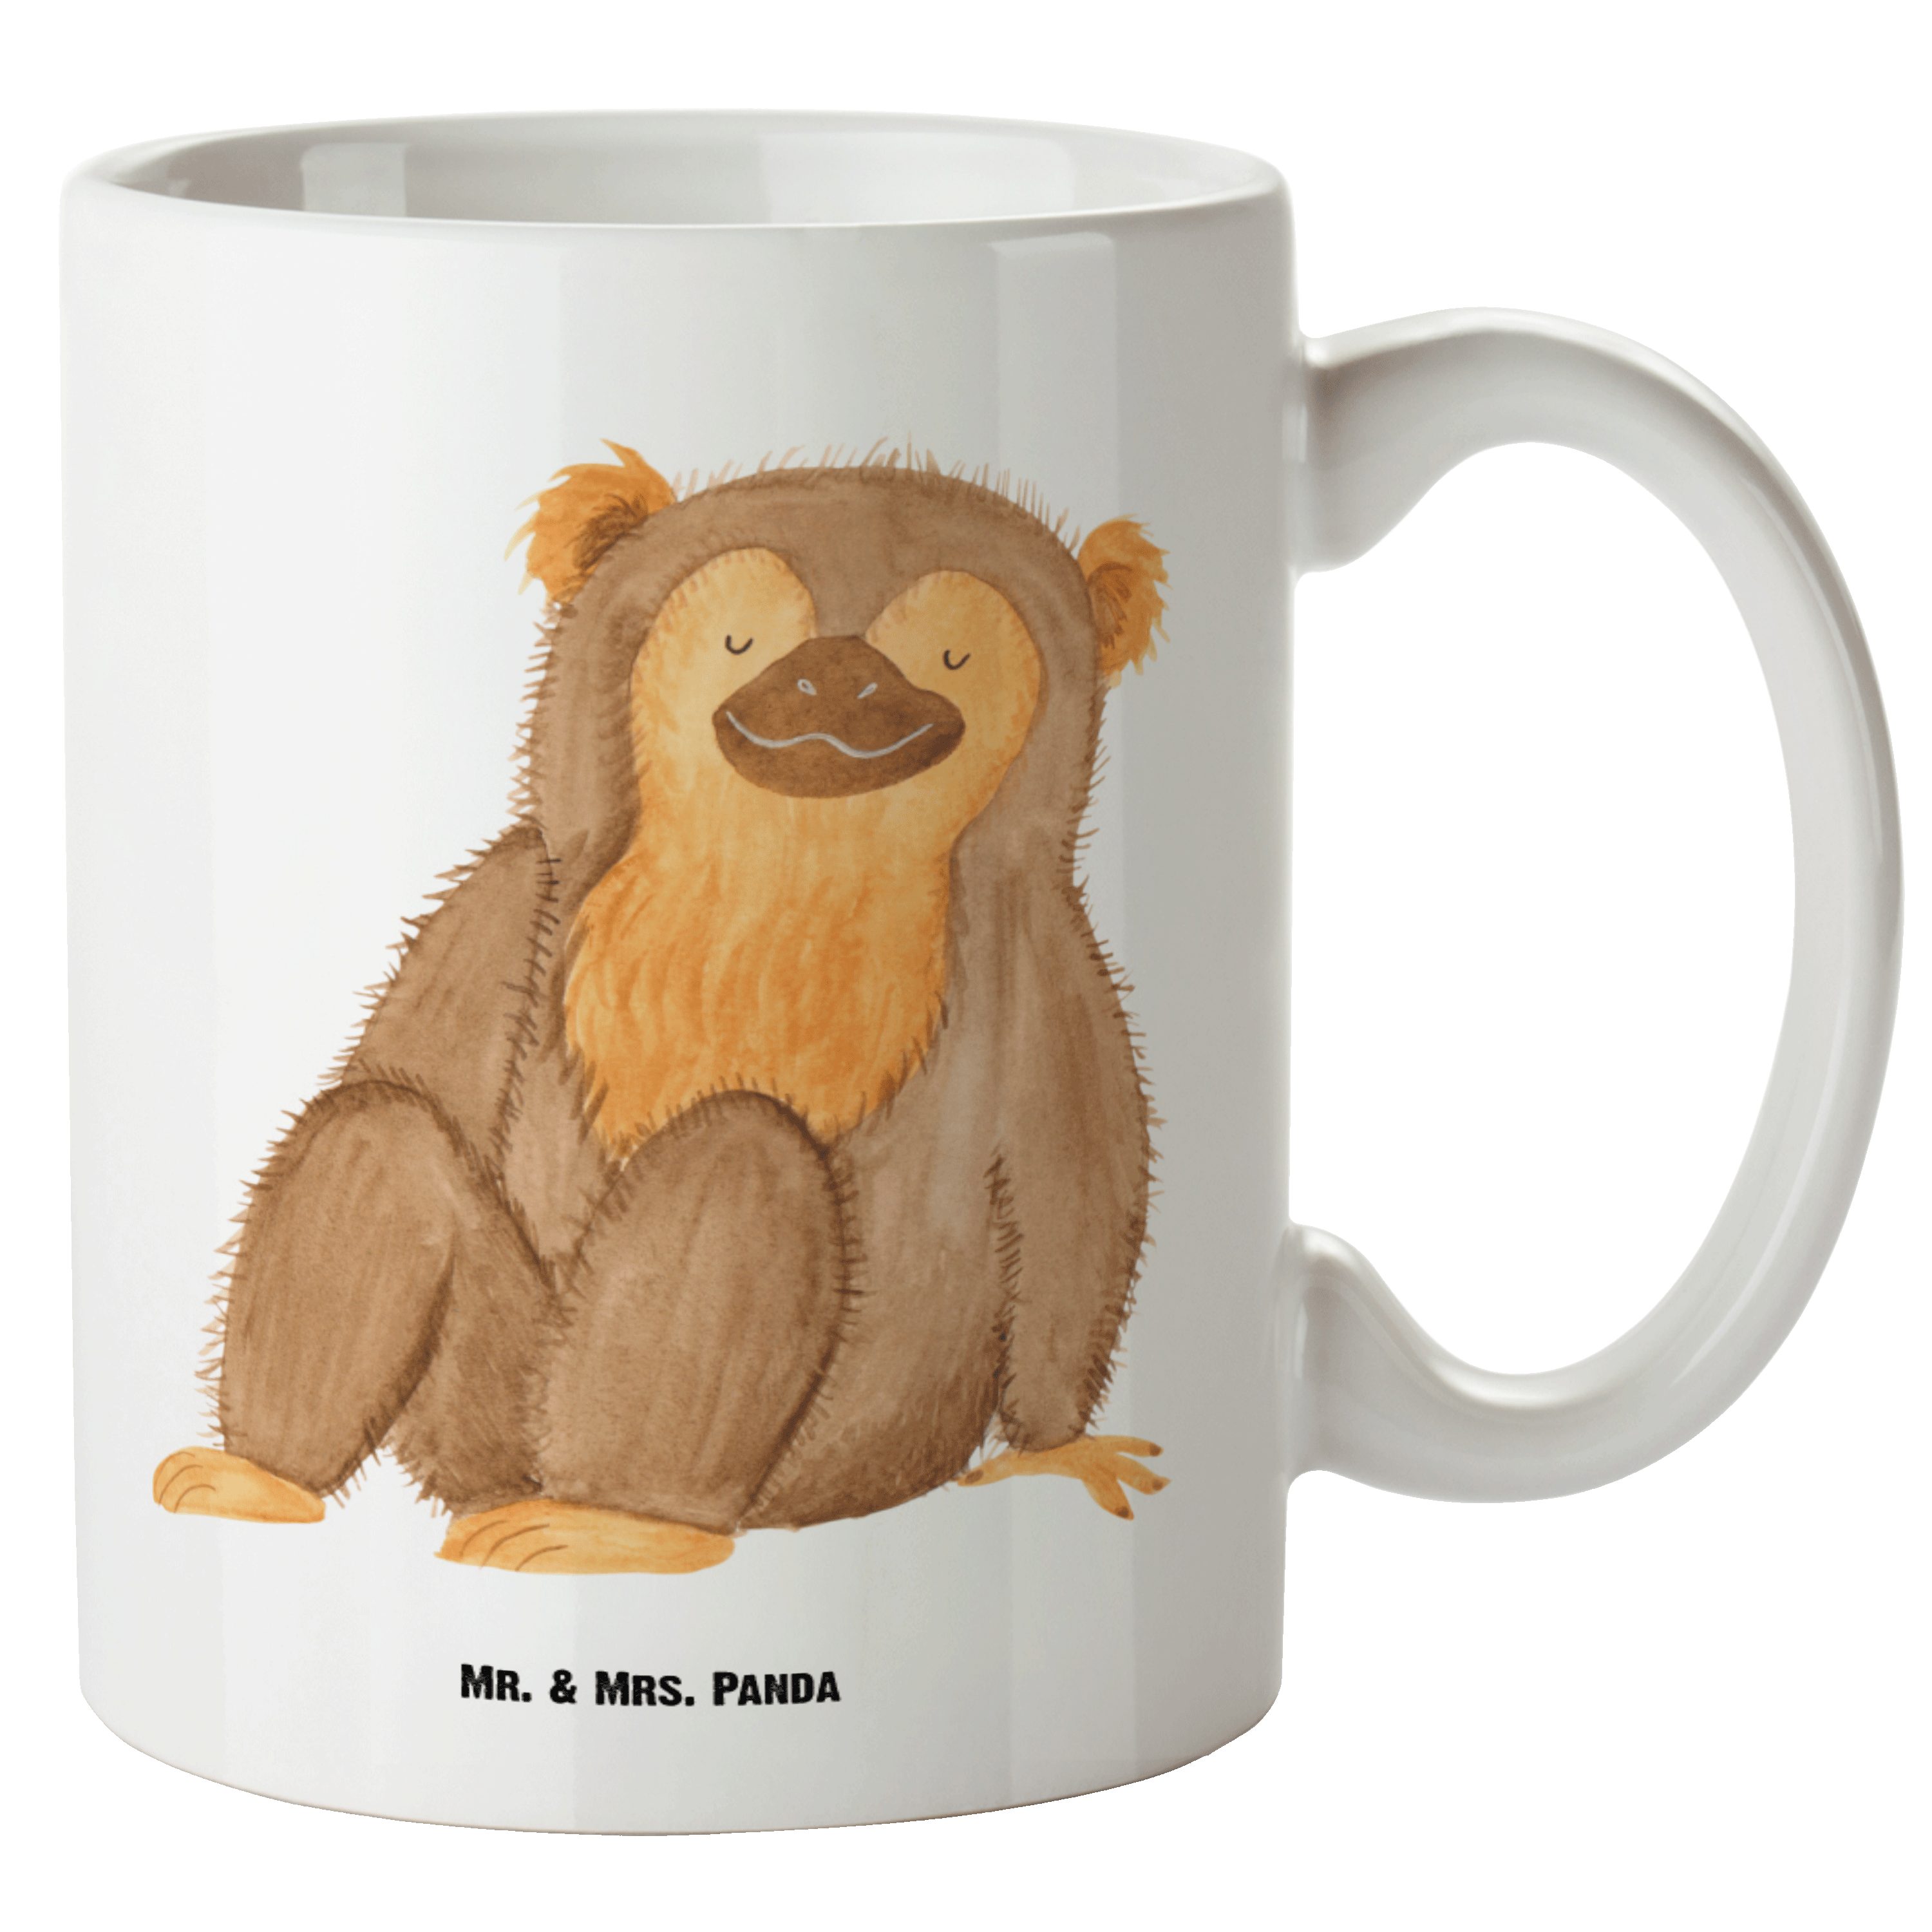 Mr. & Mrs. Panda Tasse Affe - Weiß - Geschenk, Selbstbewusstsein, XL Tasse, Groß, Grosse Kaf, XL Tasse Keramik